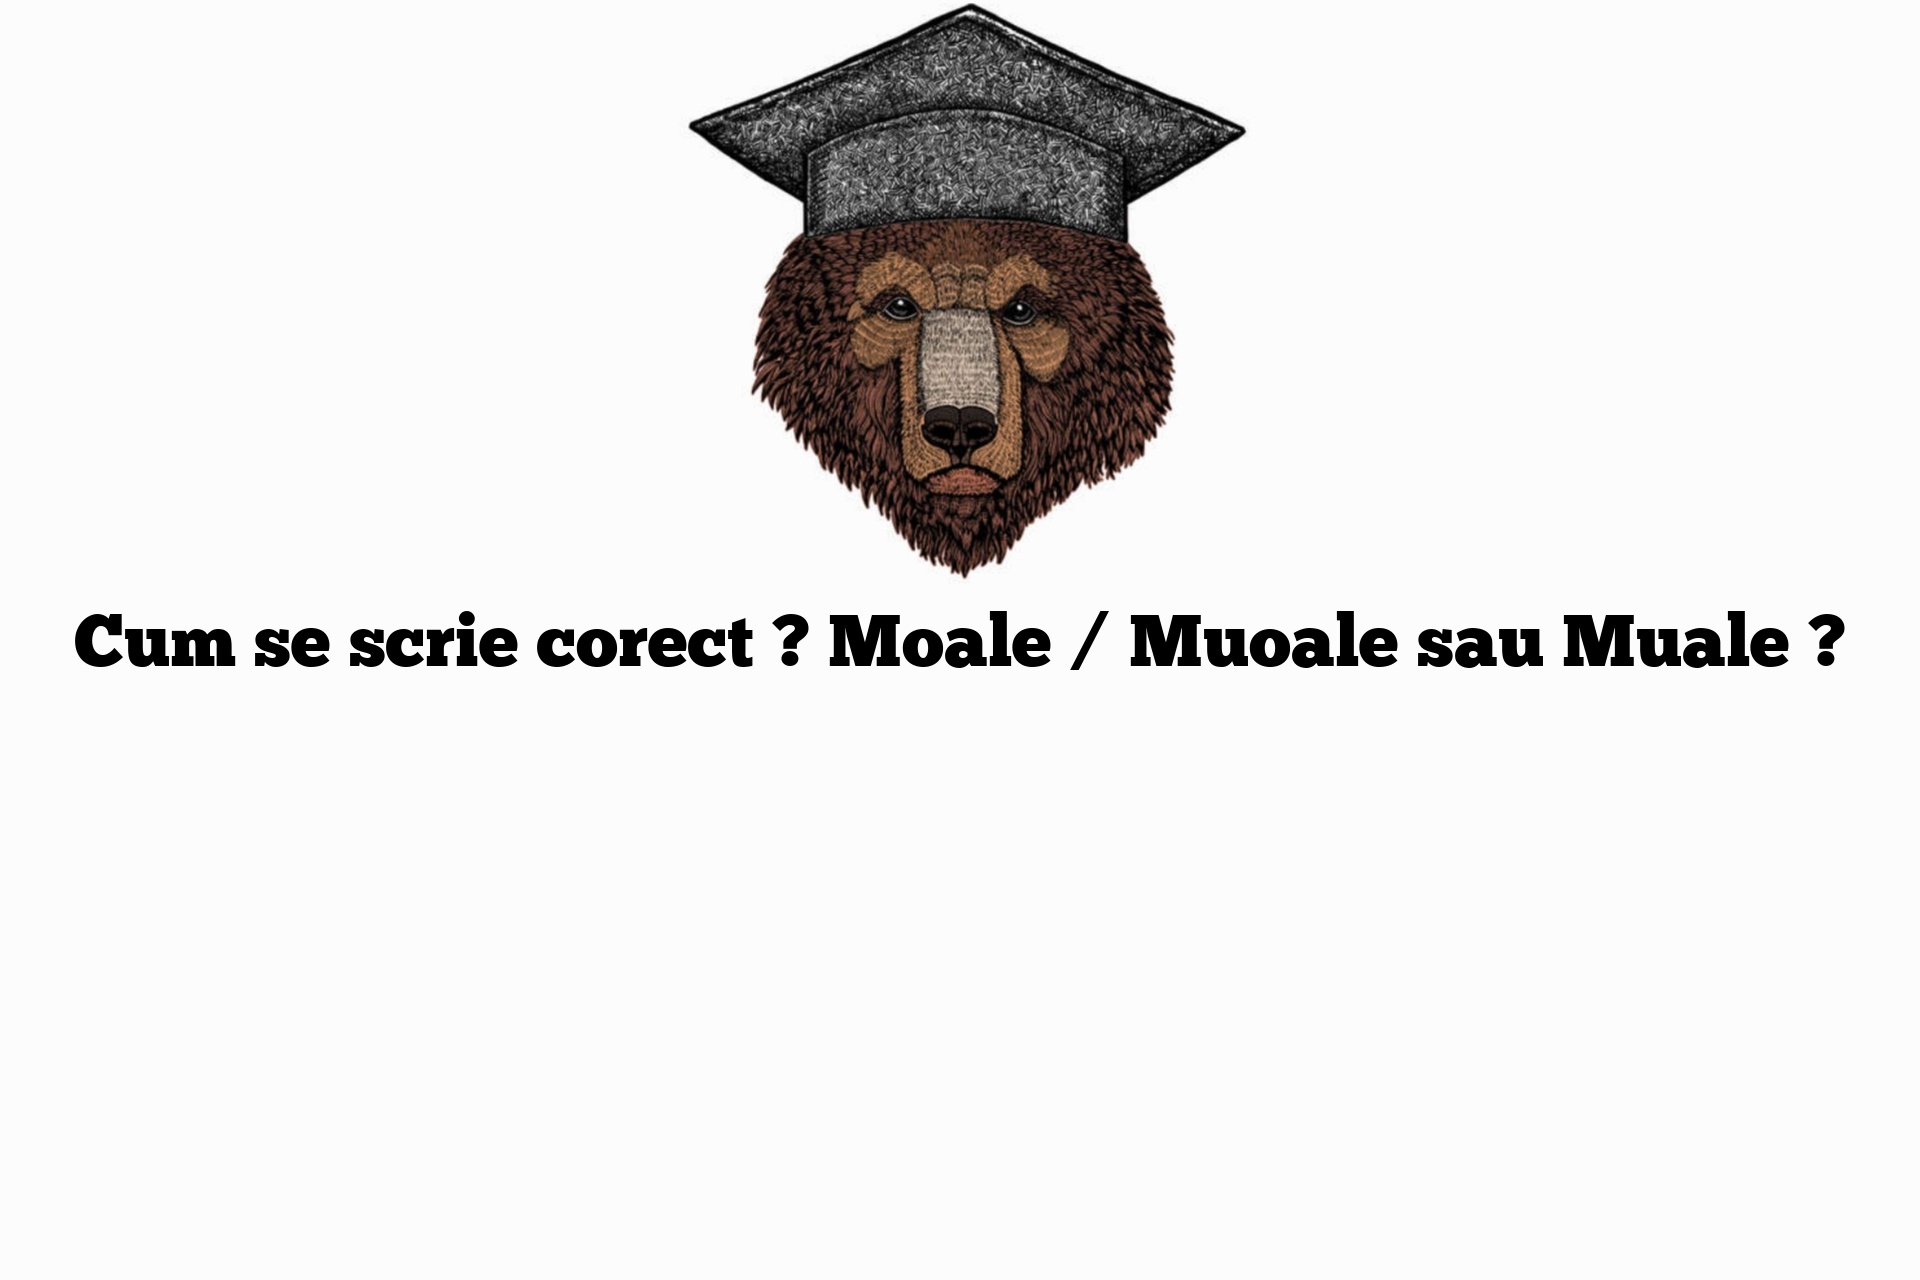 Cum se scrie corect ? Moale / Muoale sau Muale ?